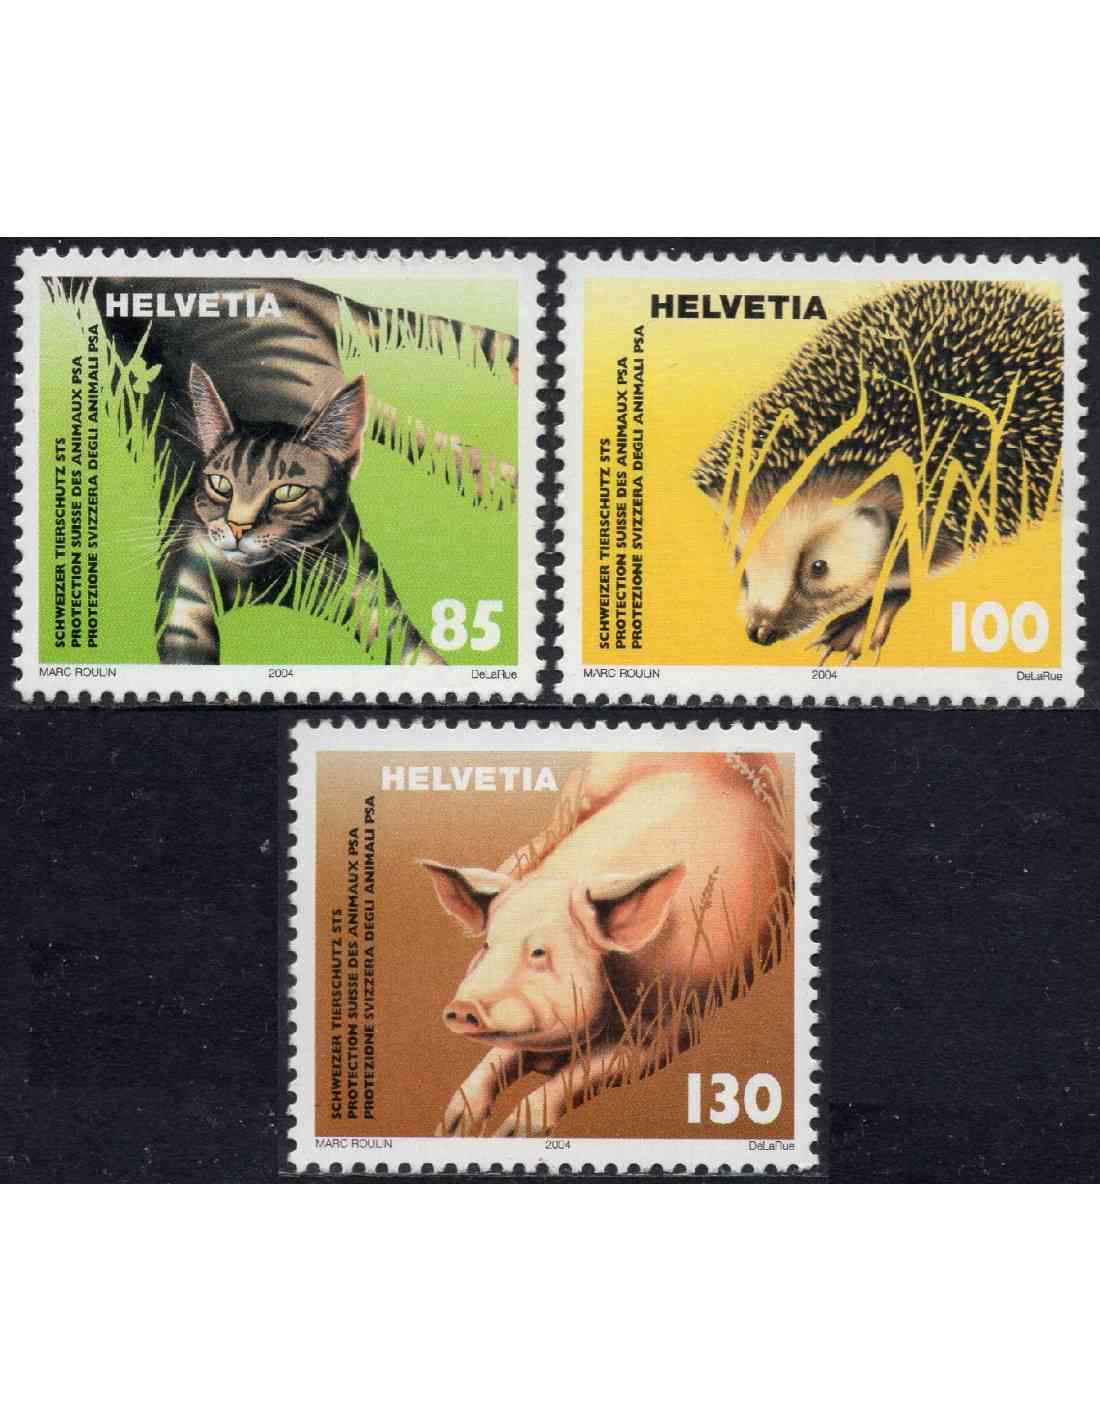 Dispersión Portavoz federación Suiza - 2004 - Correo - Nº 01812/14 - **/MNH - Proteccion animal. (3 sellos)